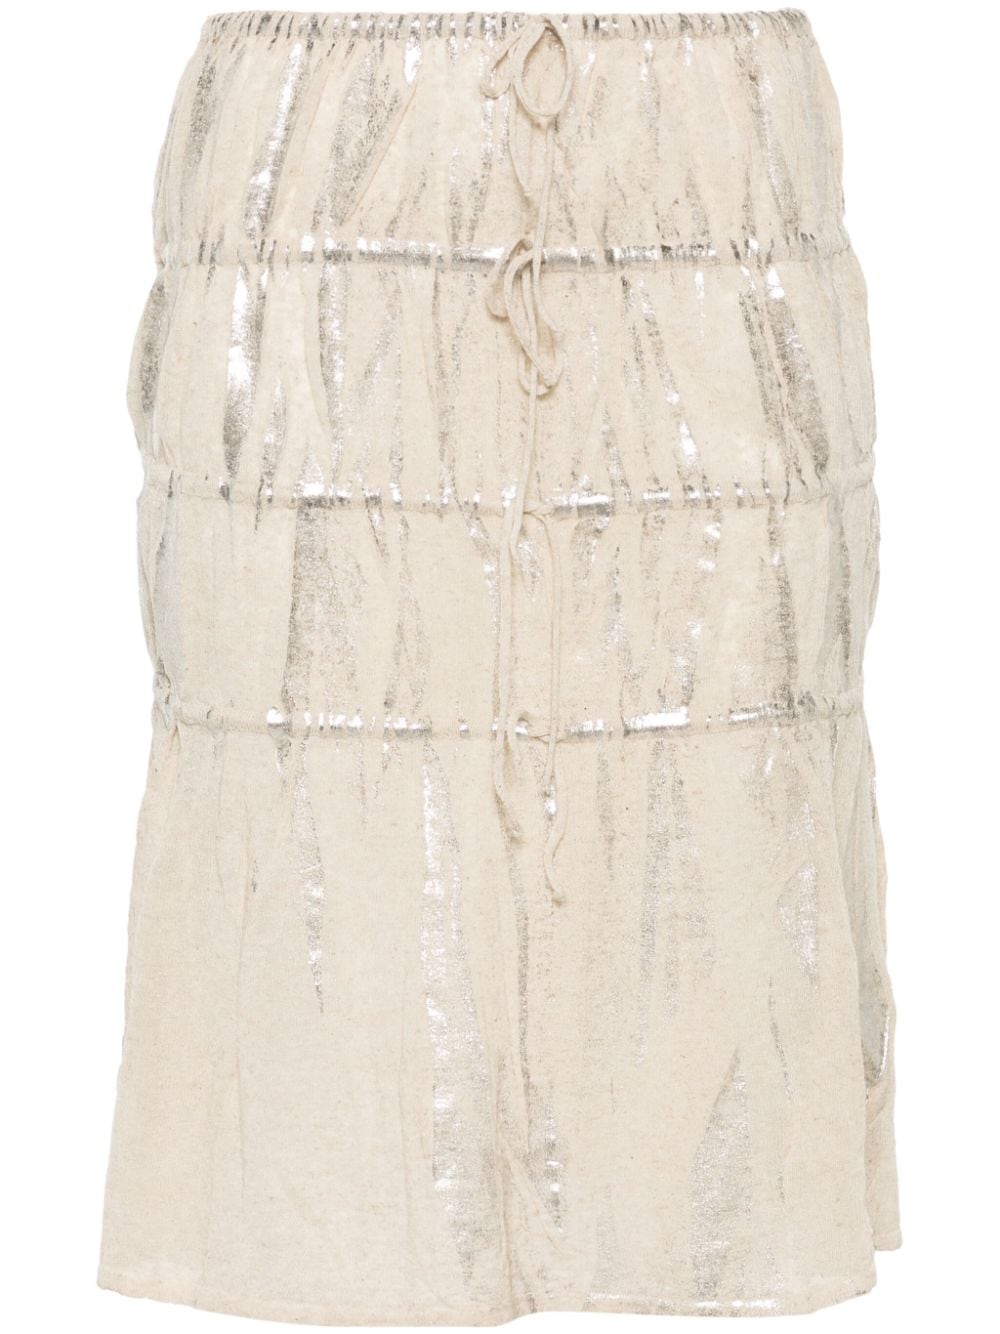 Plata foiled-finish skirt